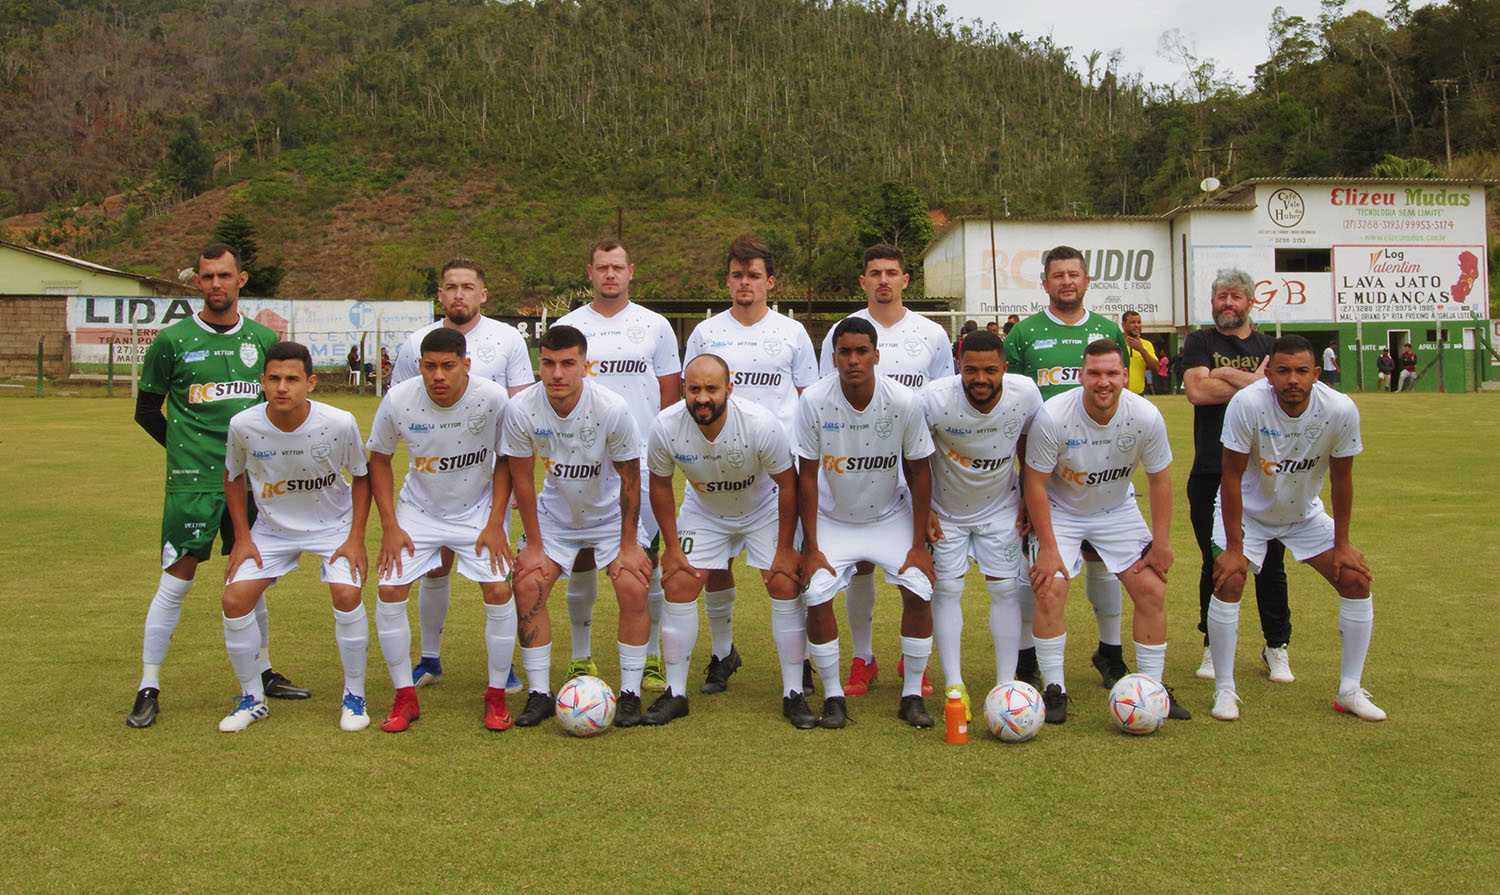 Grande final do Campeonato Intermunicipal de Futebol será no próximo  domingo – Prefeitura de Marechal Floriano